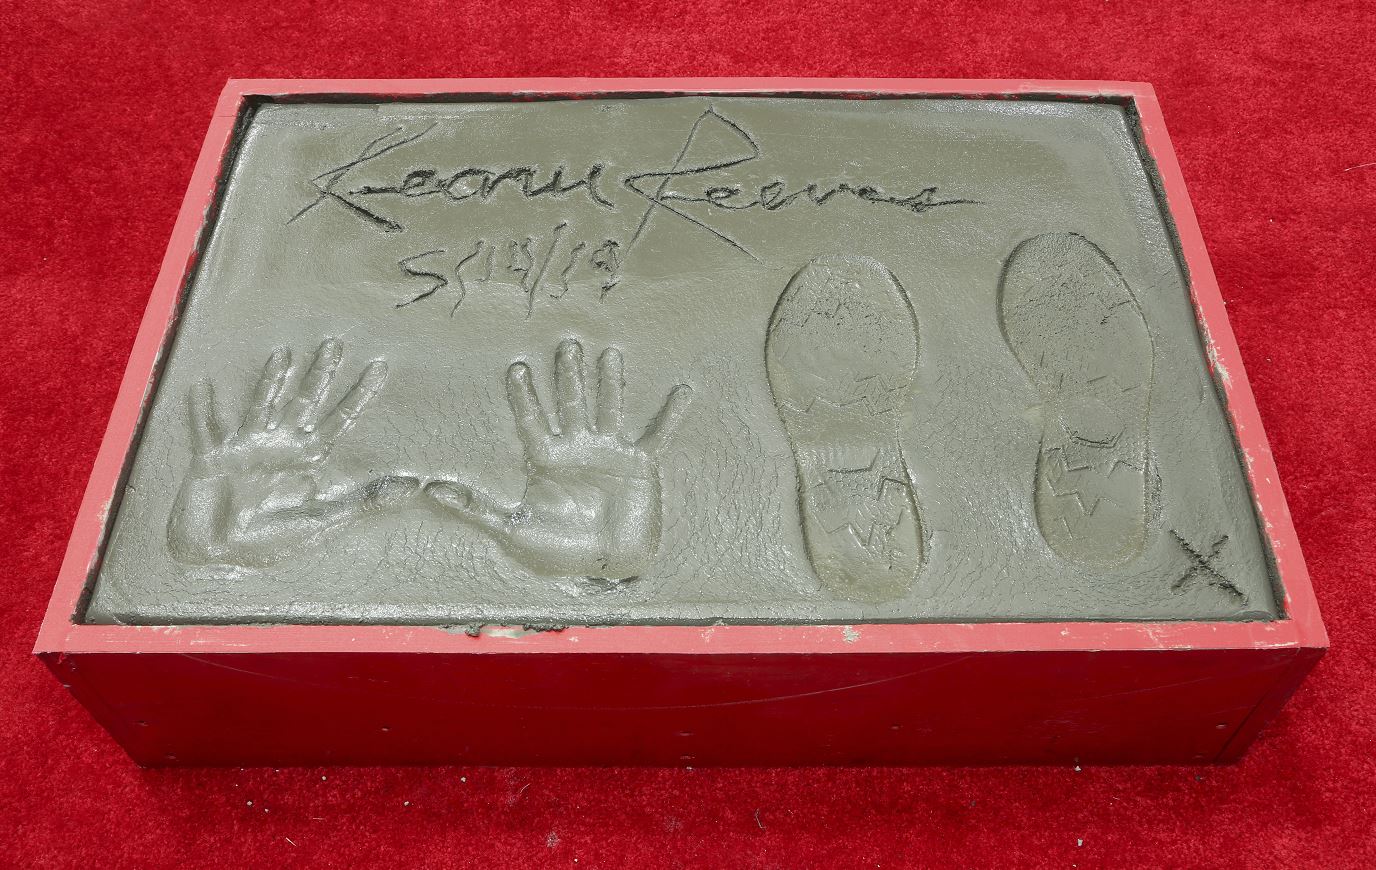 Foto: El actor canadiense Keanu Reeves inmortalizó sus huellas y firma en el célebre Paseo de la Fama de Hollywood, 15 mayo 2019